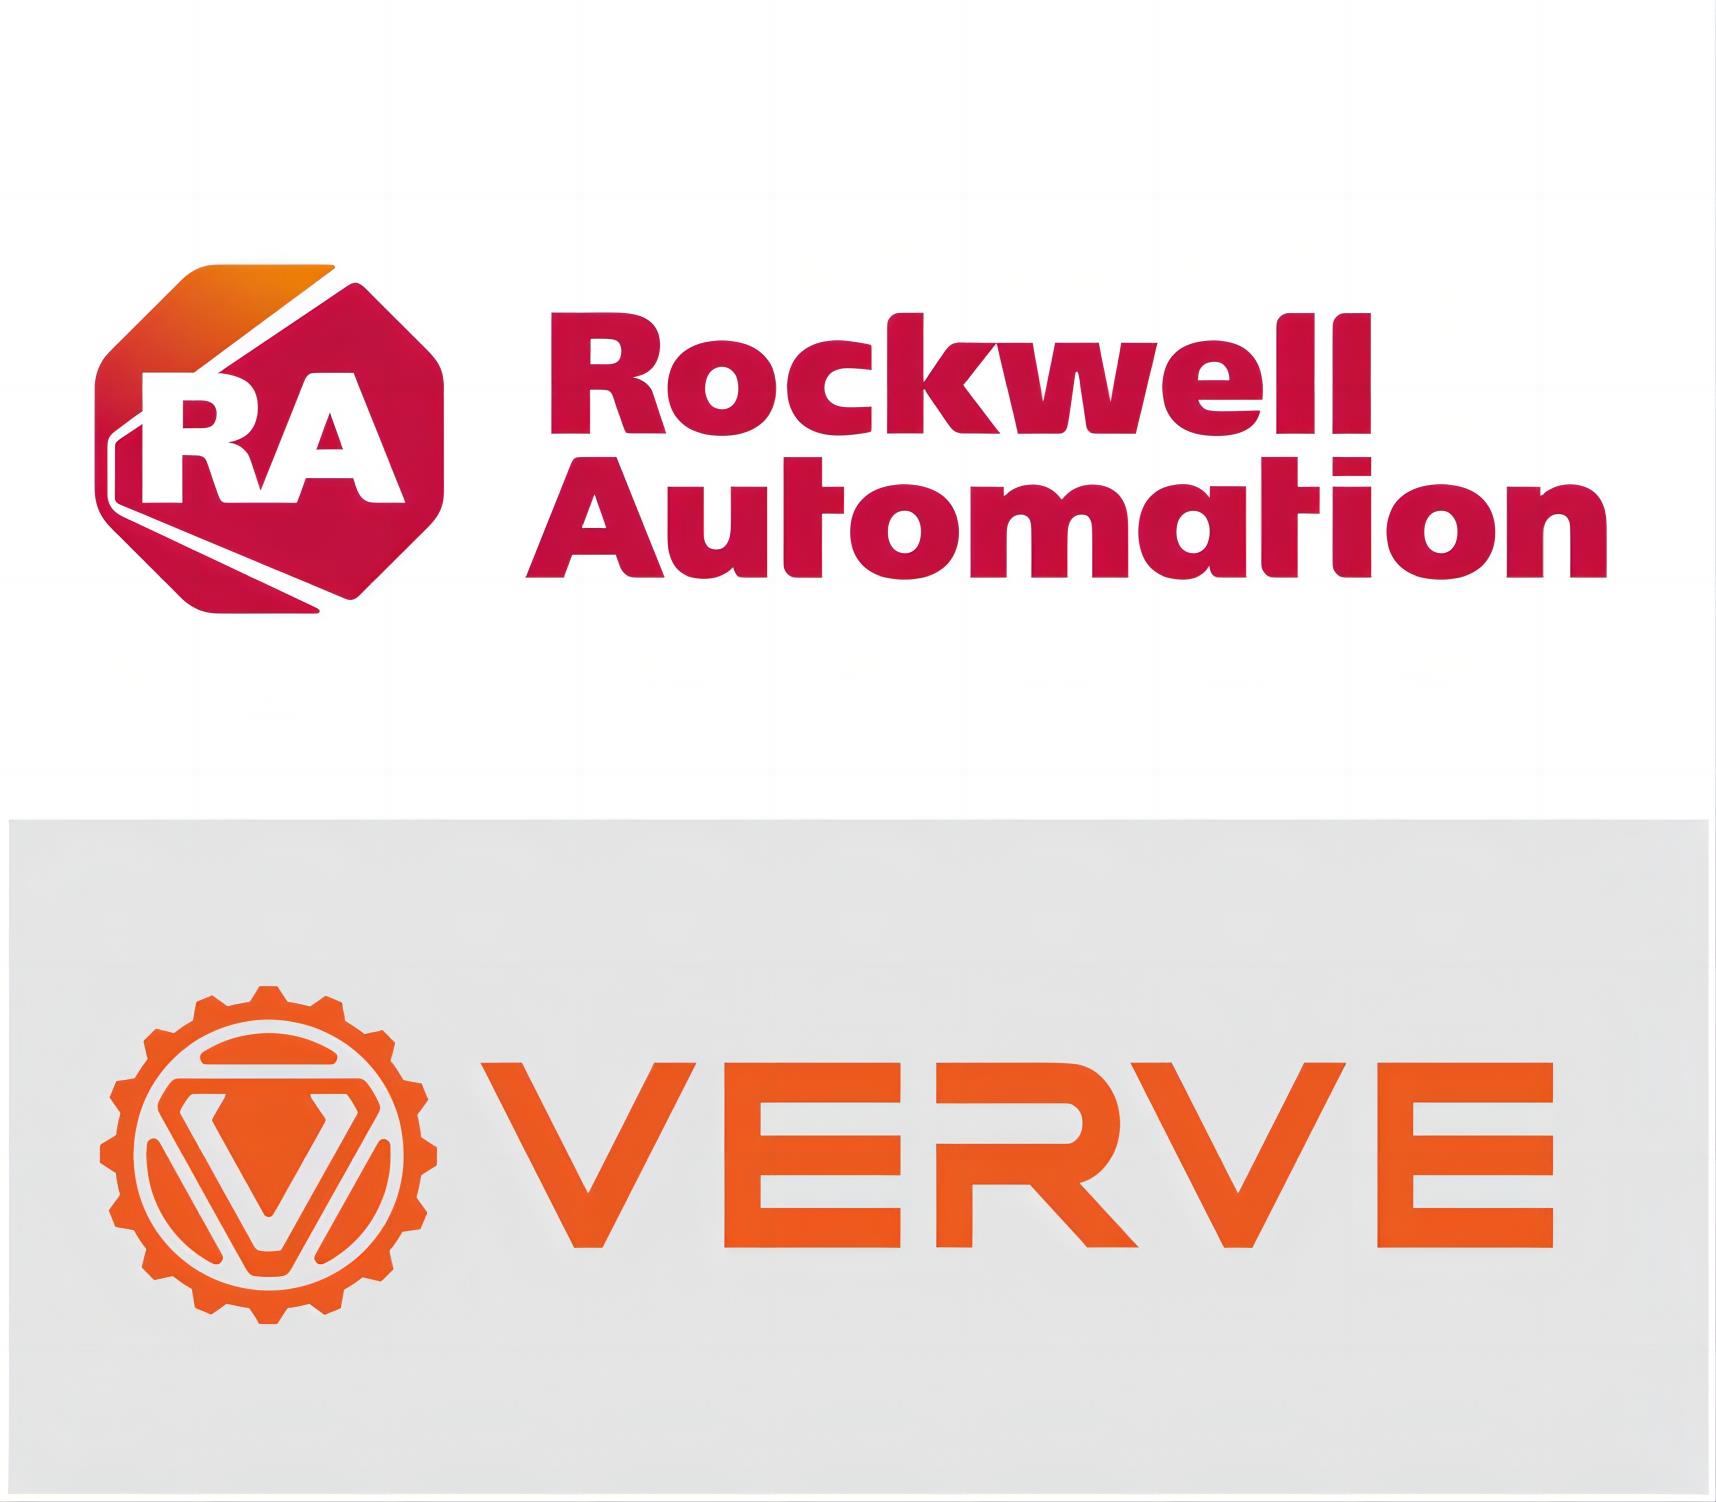 罗克韦尔自动化签署协议收购 Verve工业保护公司